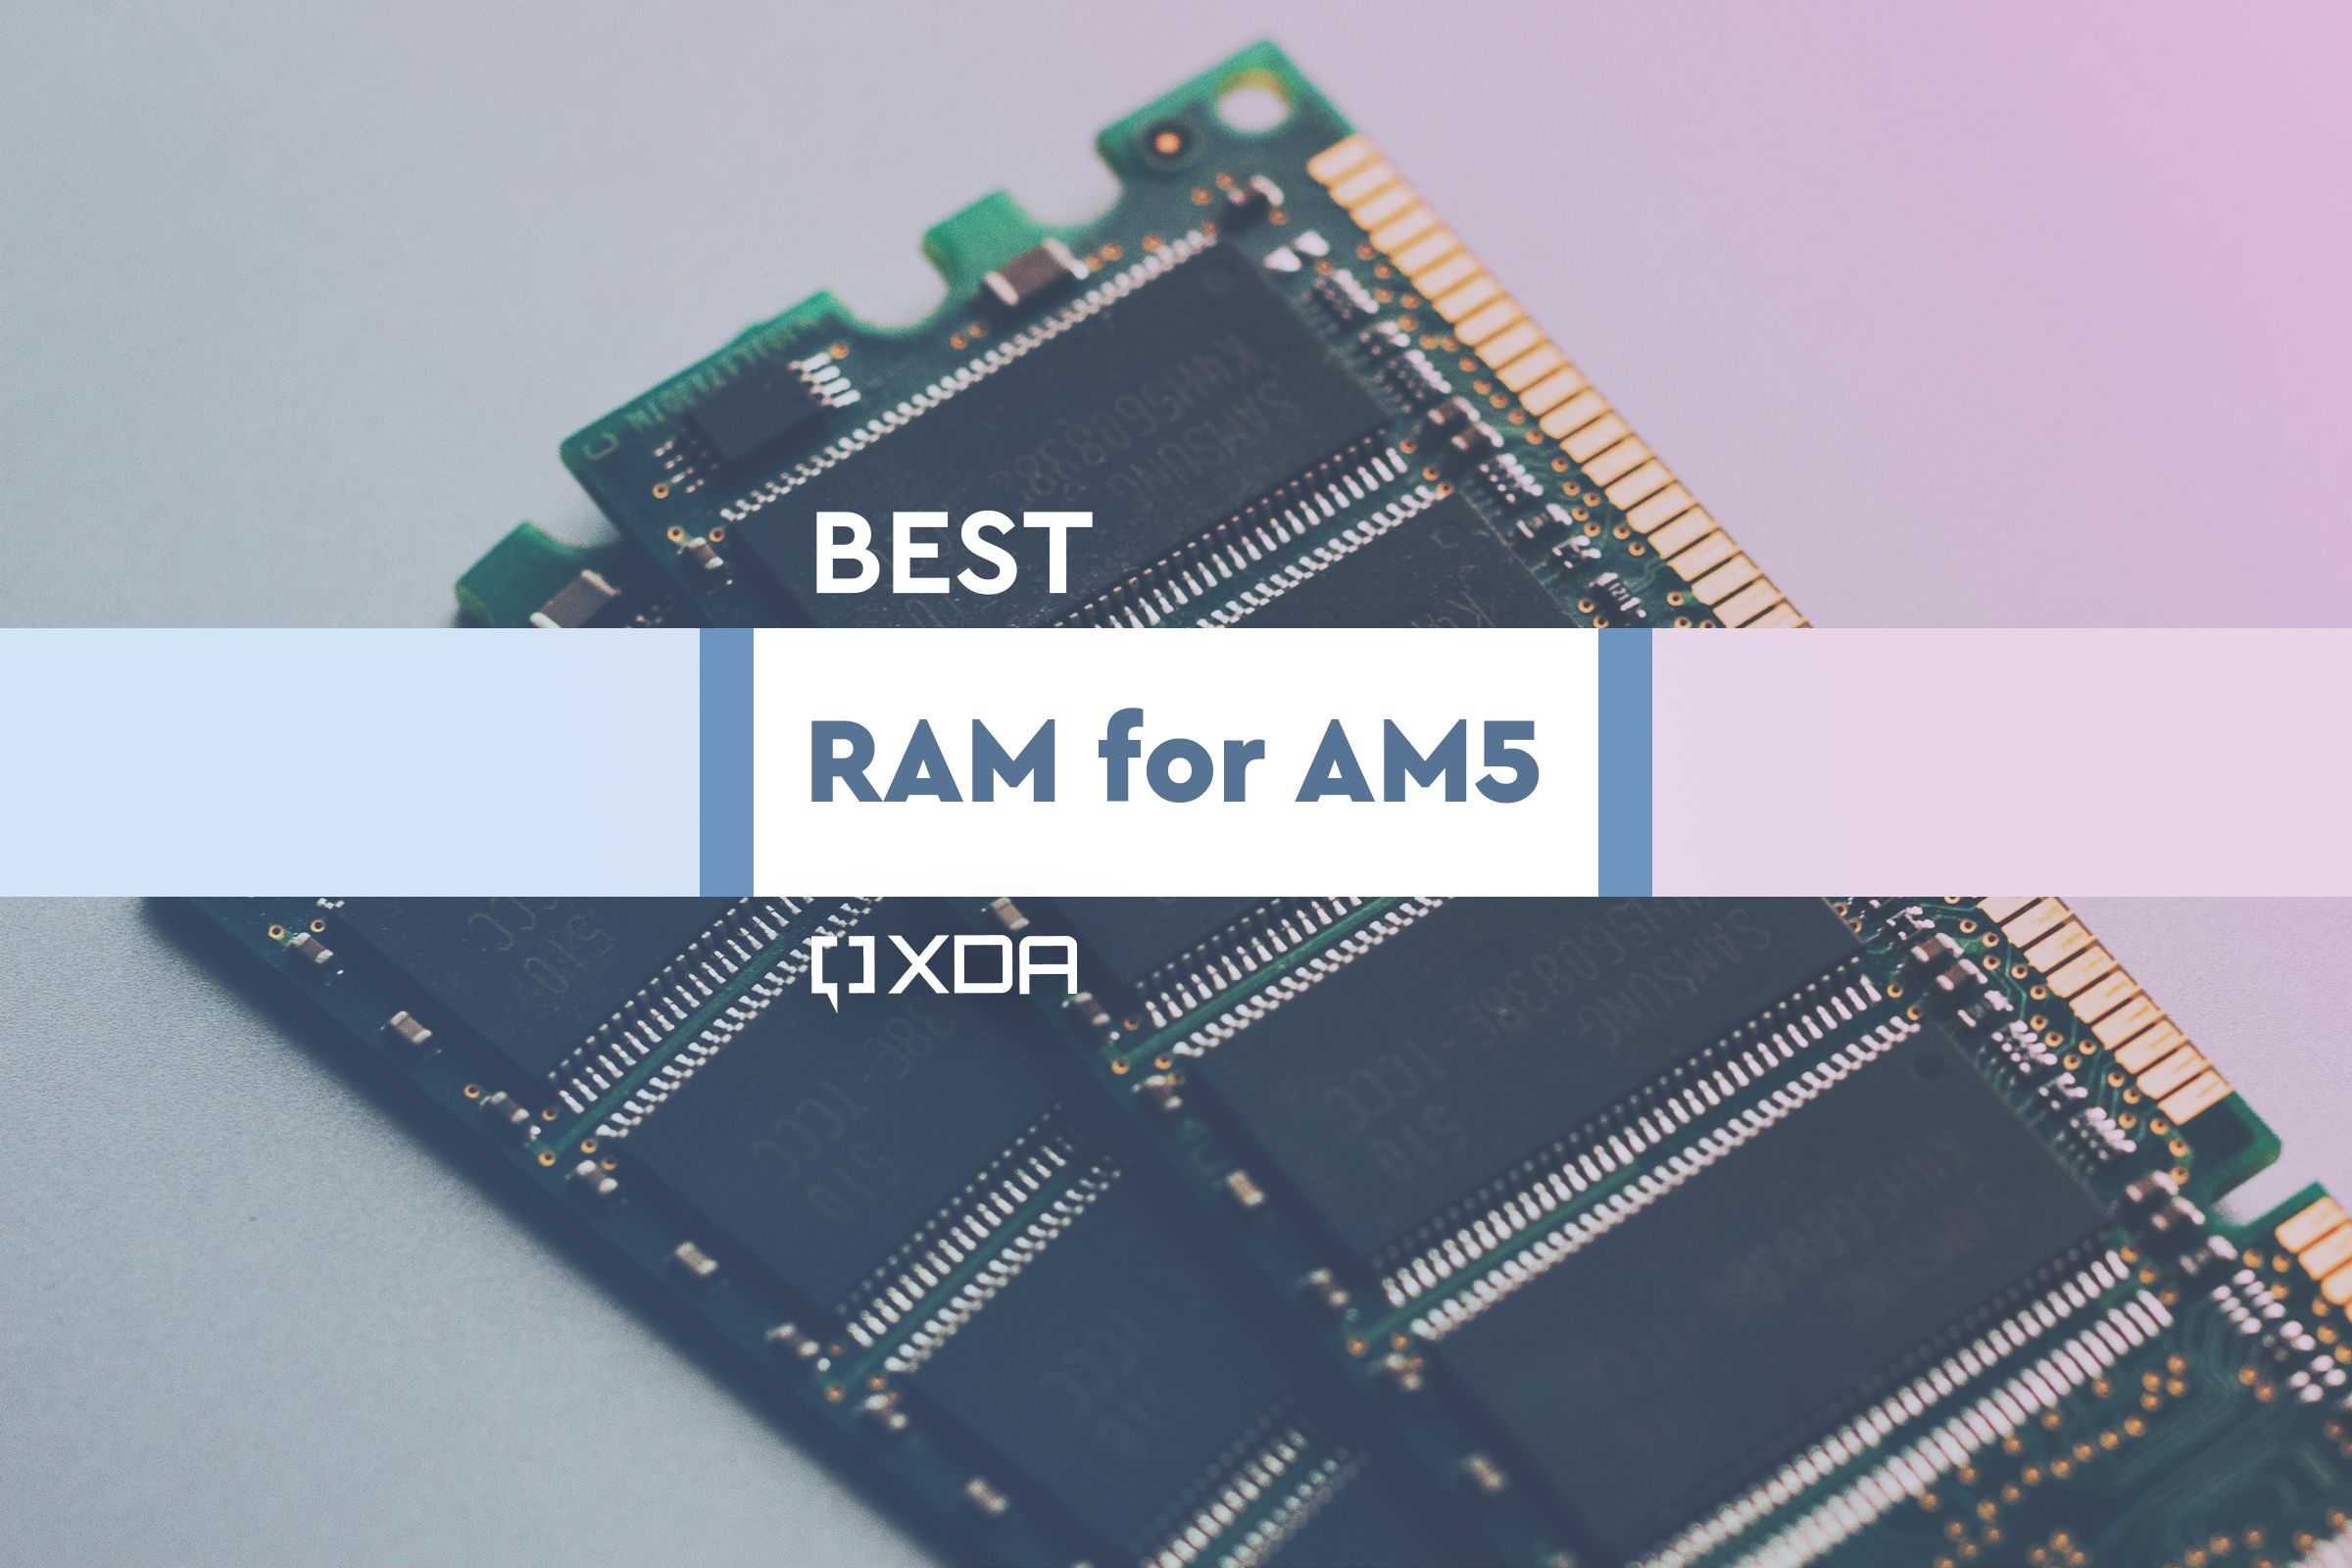 Best RAM for AM5